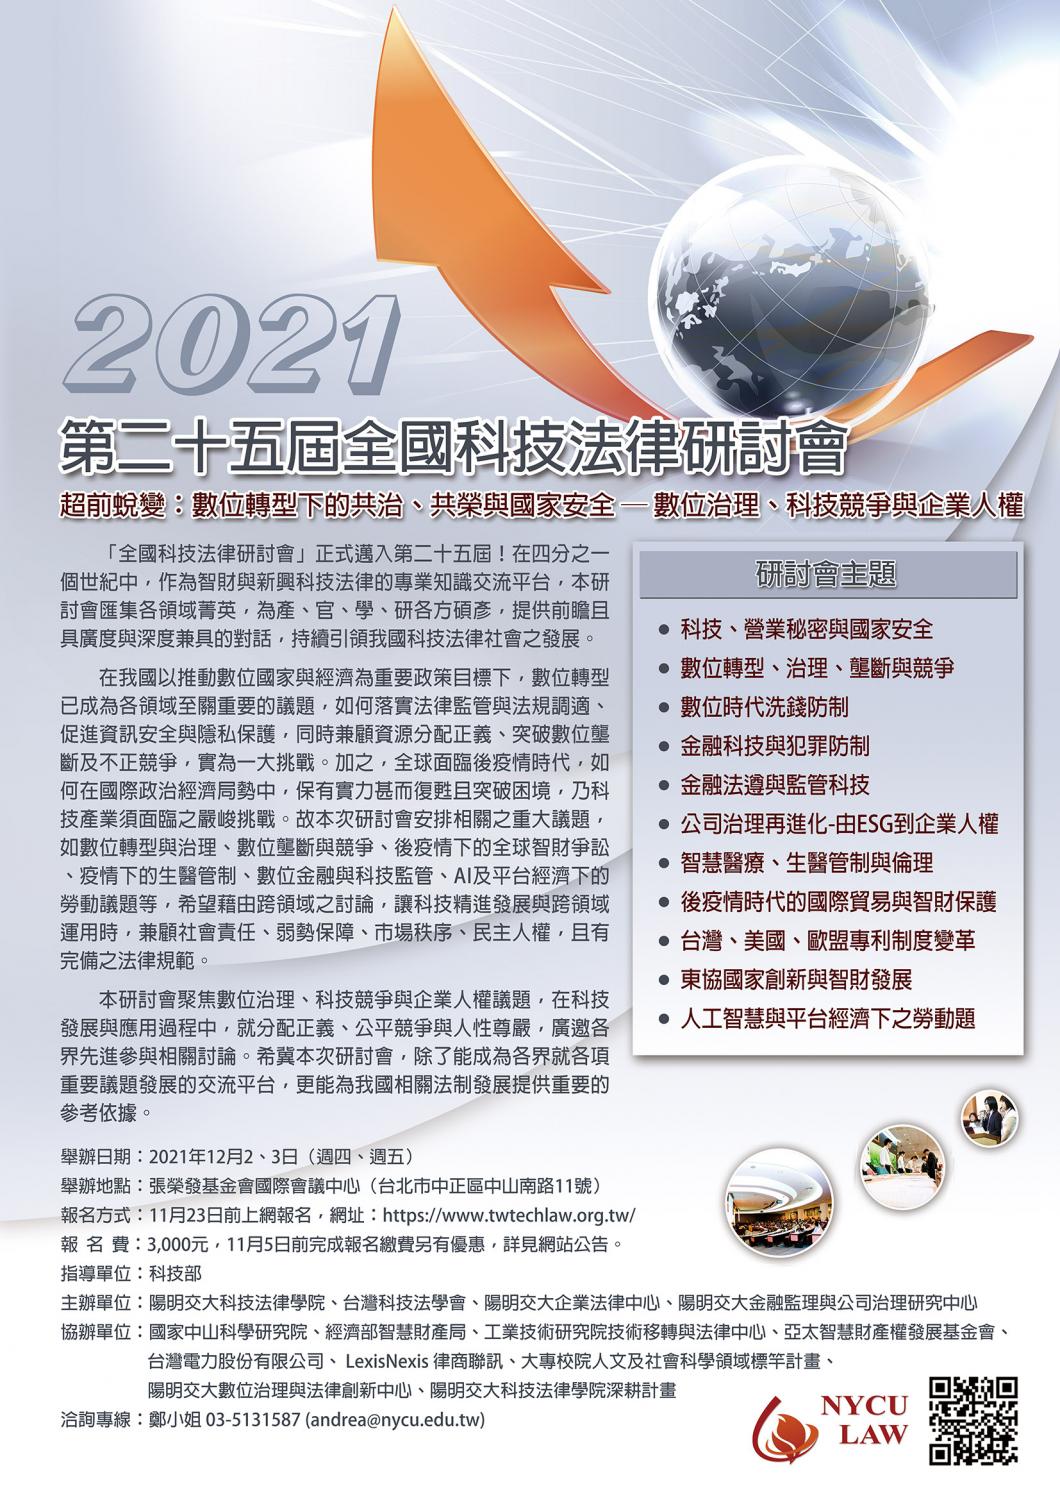 2021年第二十五届全国科技法律研讨会 海报